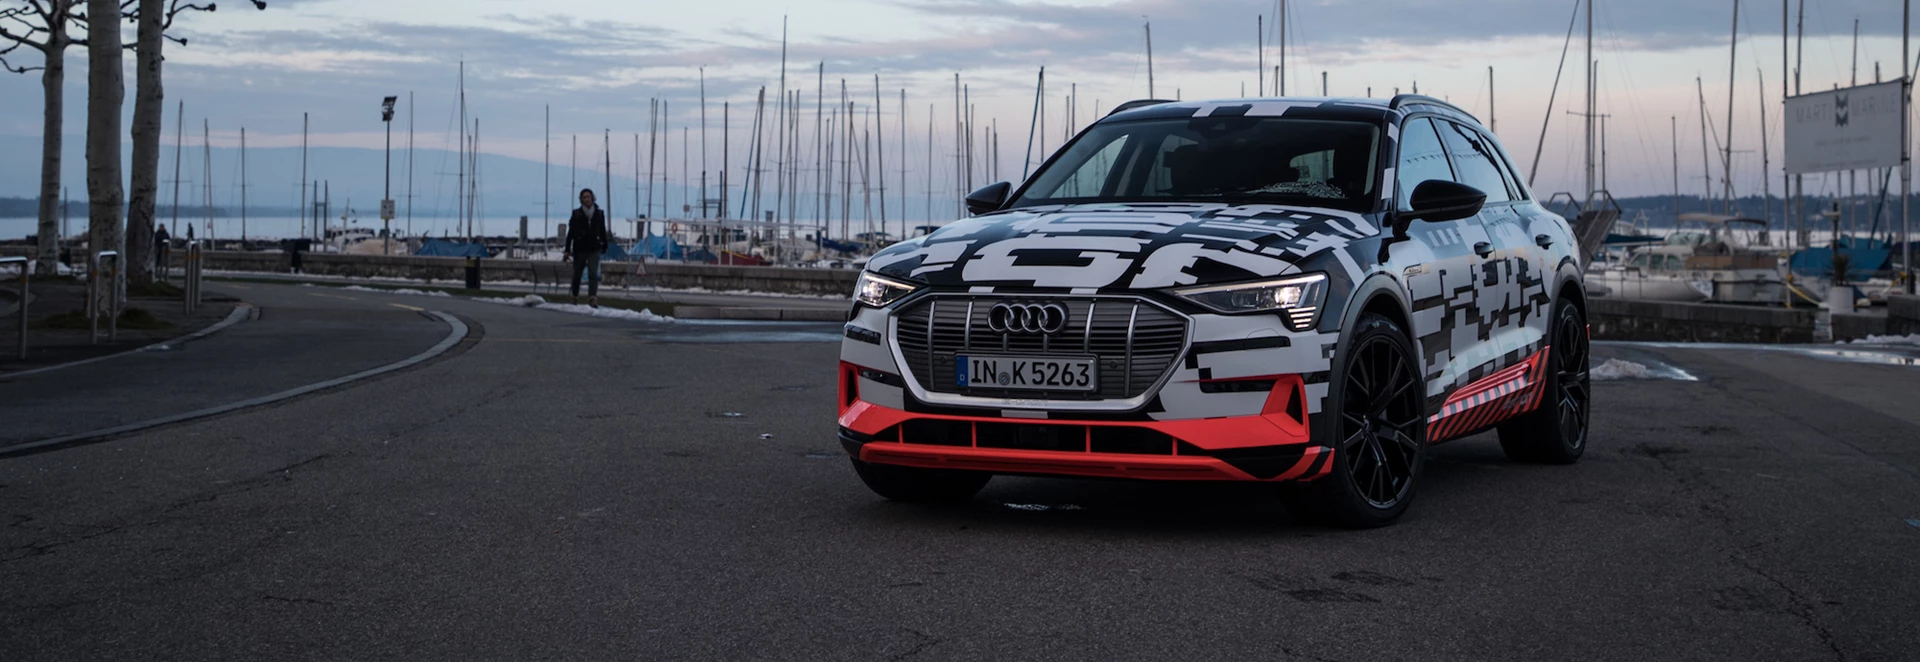 Order books open for new Audi e-tron electric SUV